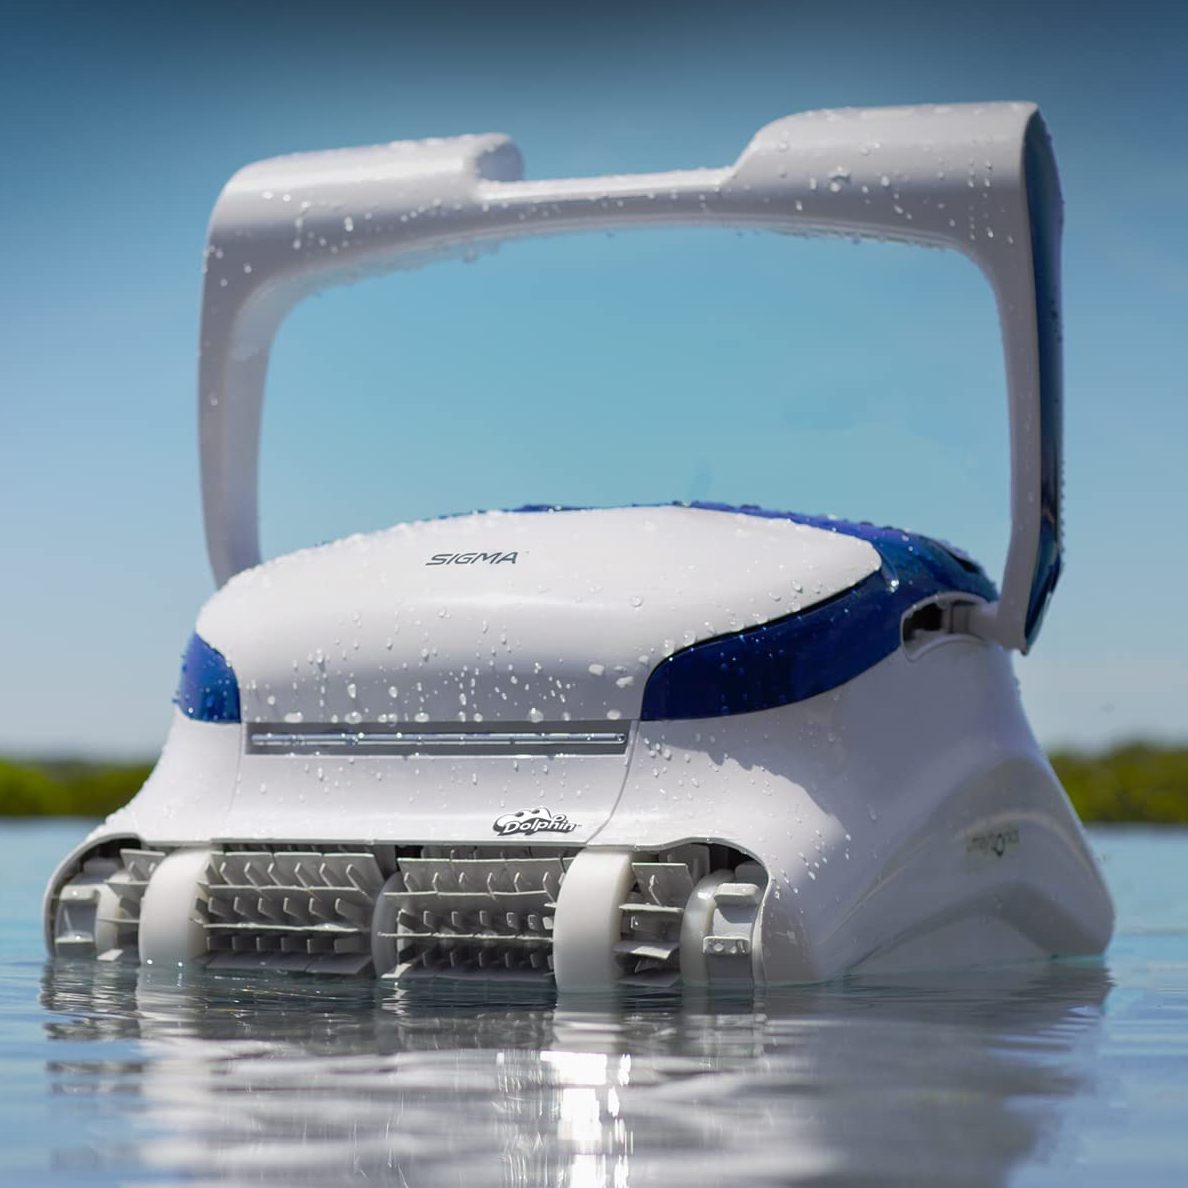 Dolphin Sigma Robotic Pool Cleaner Ecomm Via Amazon